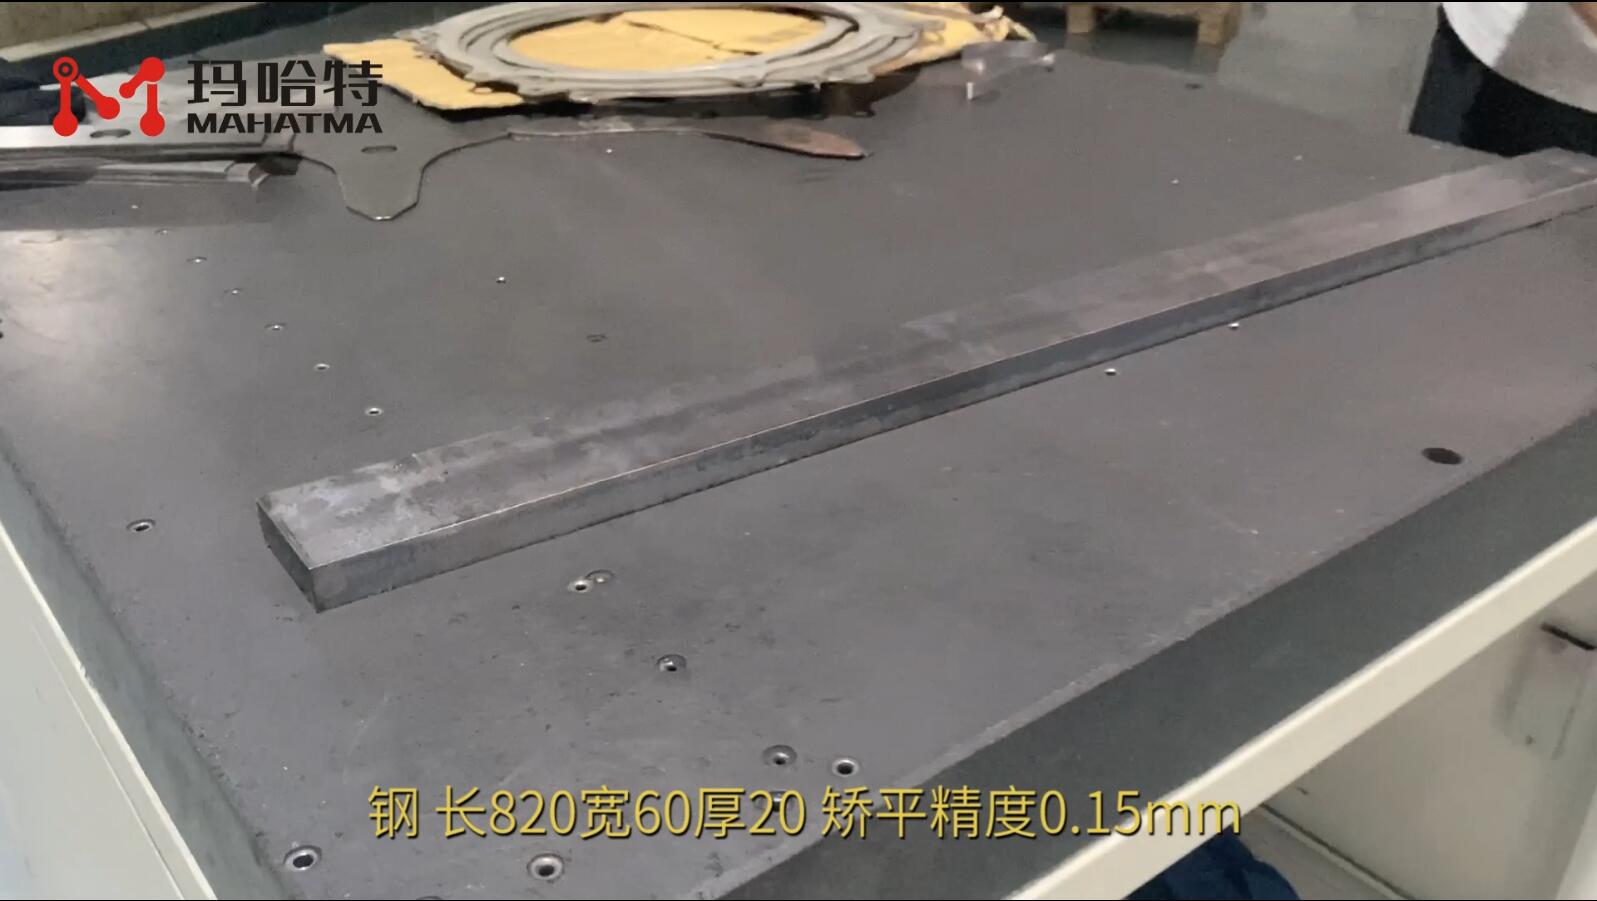 钢 MHT120-1300 长方形 长820宽60厚20mm